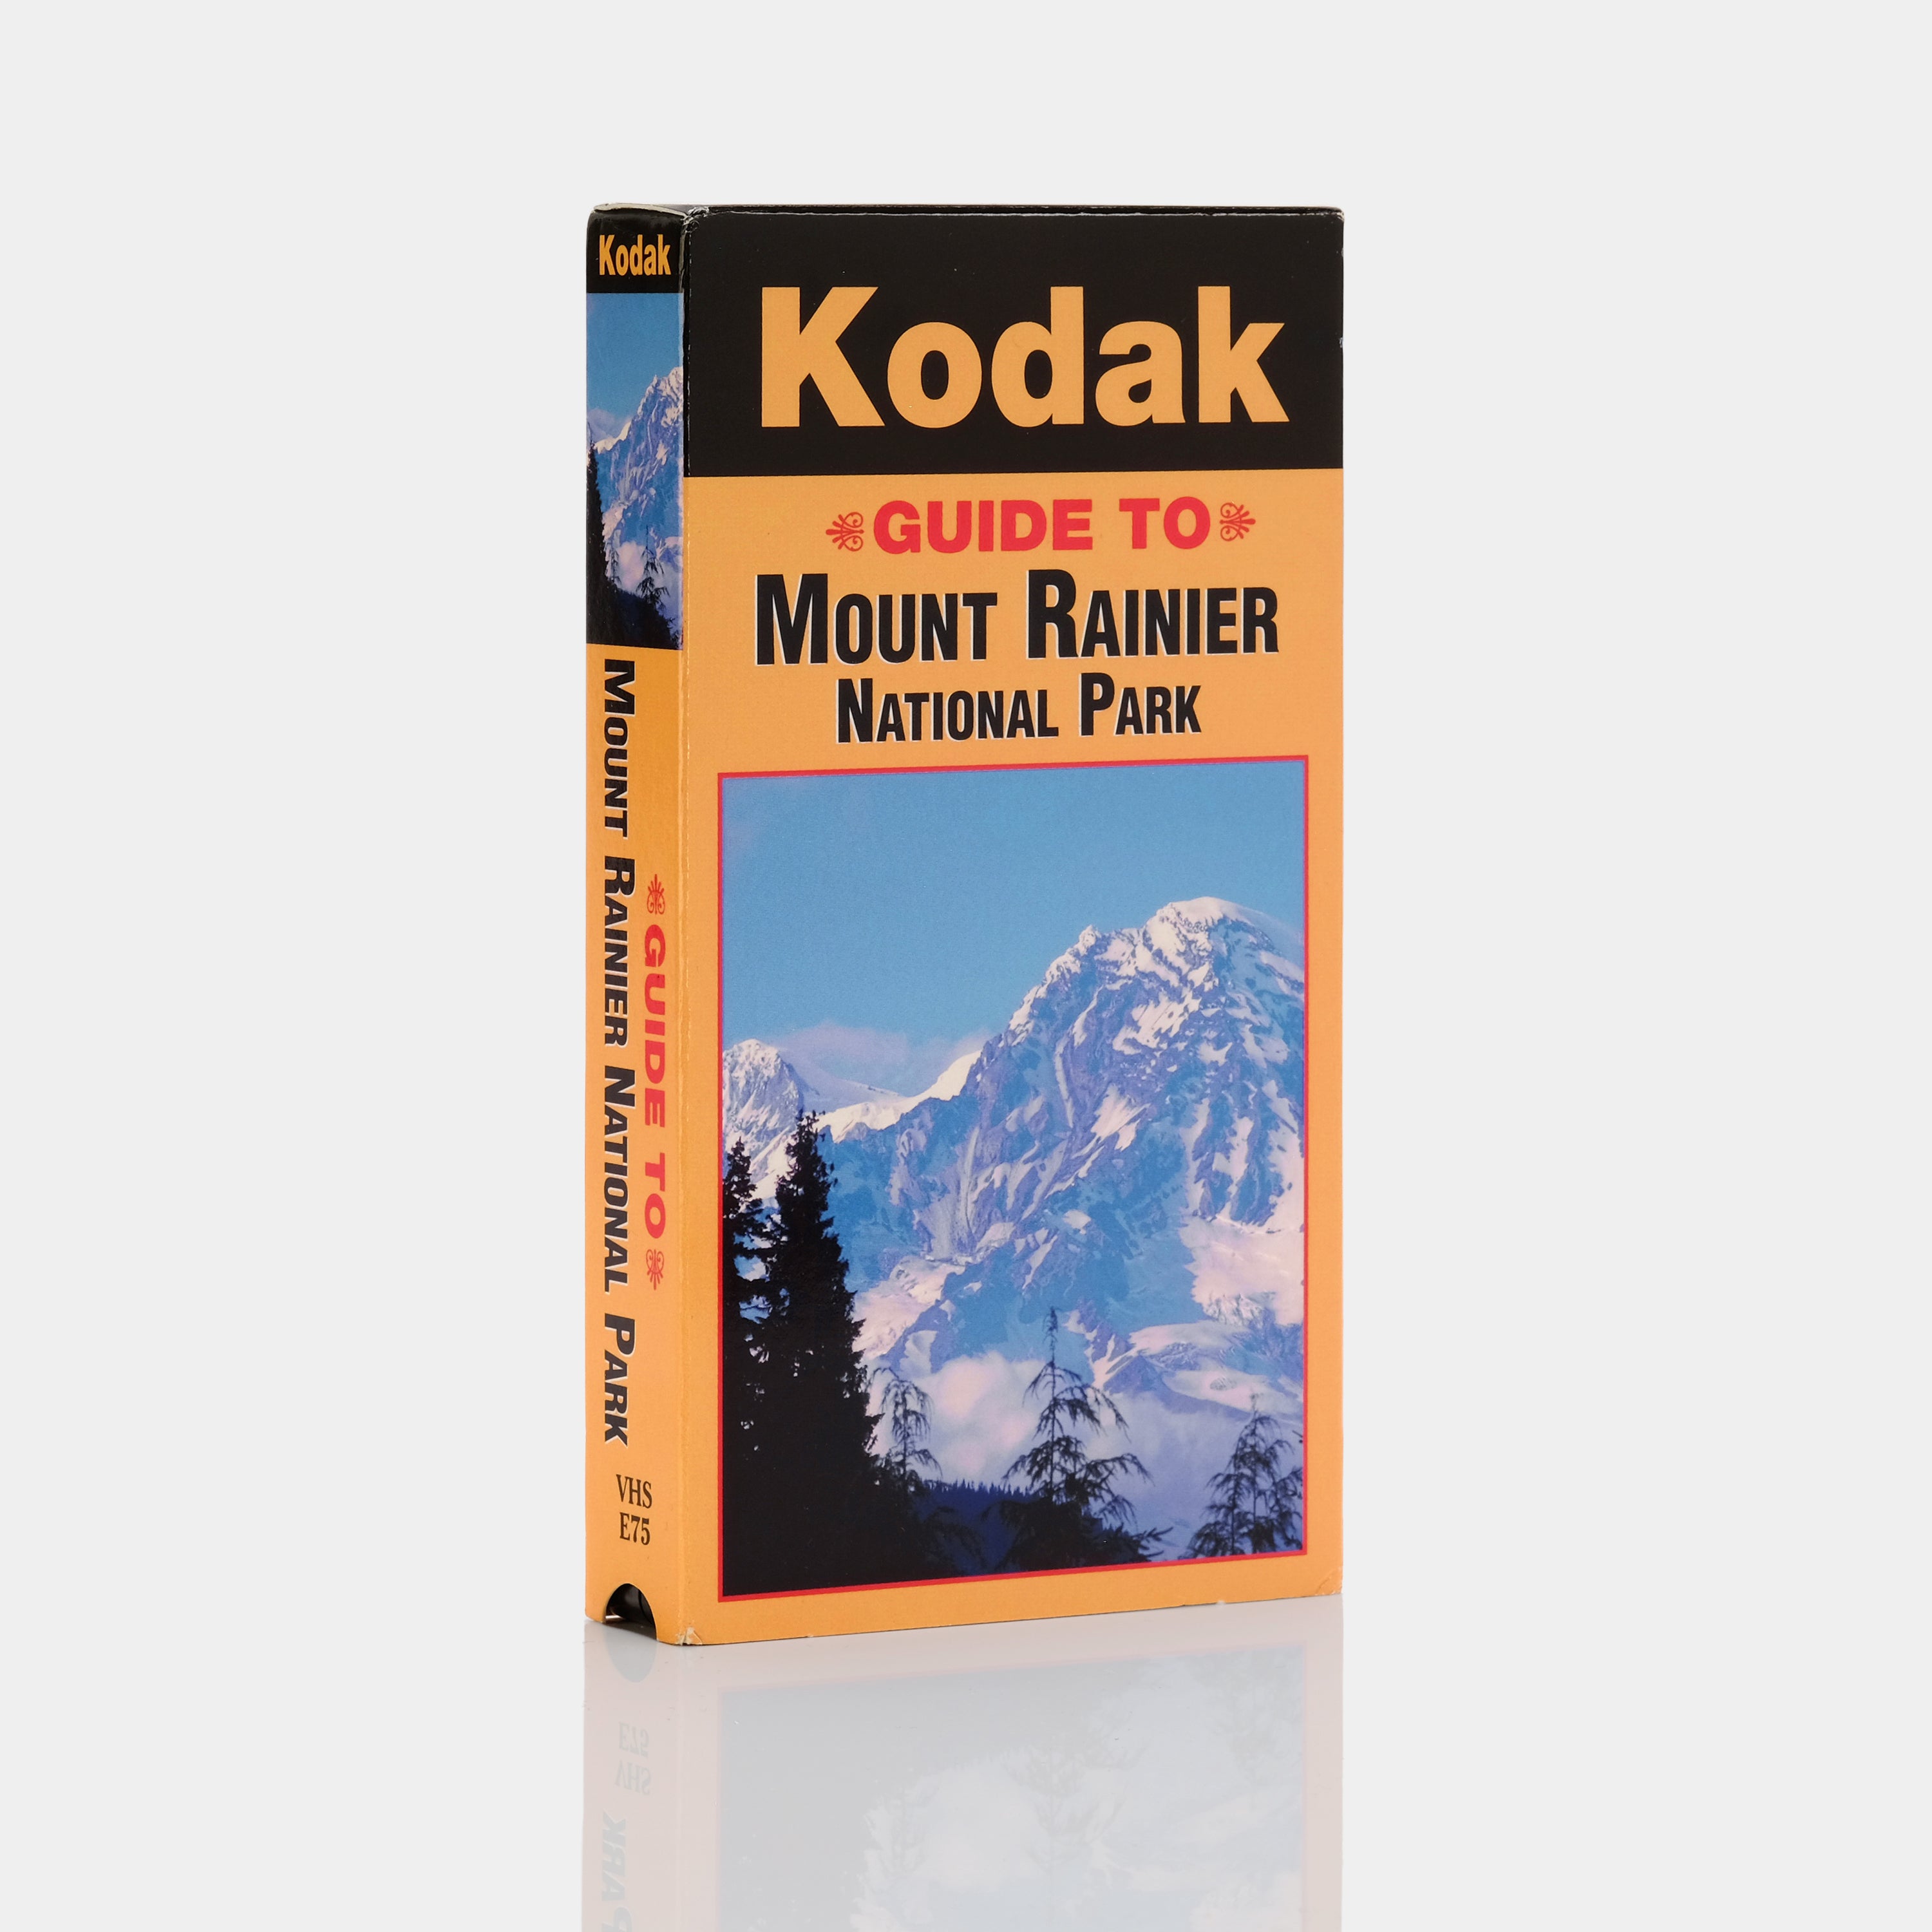 Kodak: Guide To Mount Rainer National Park VHS Tape